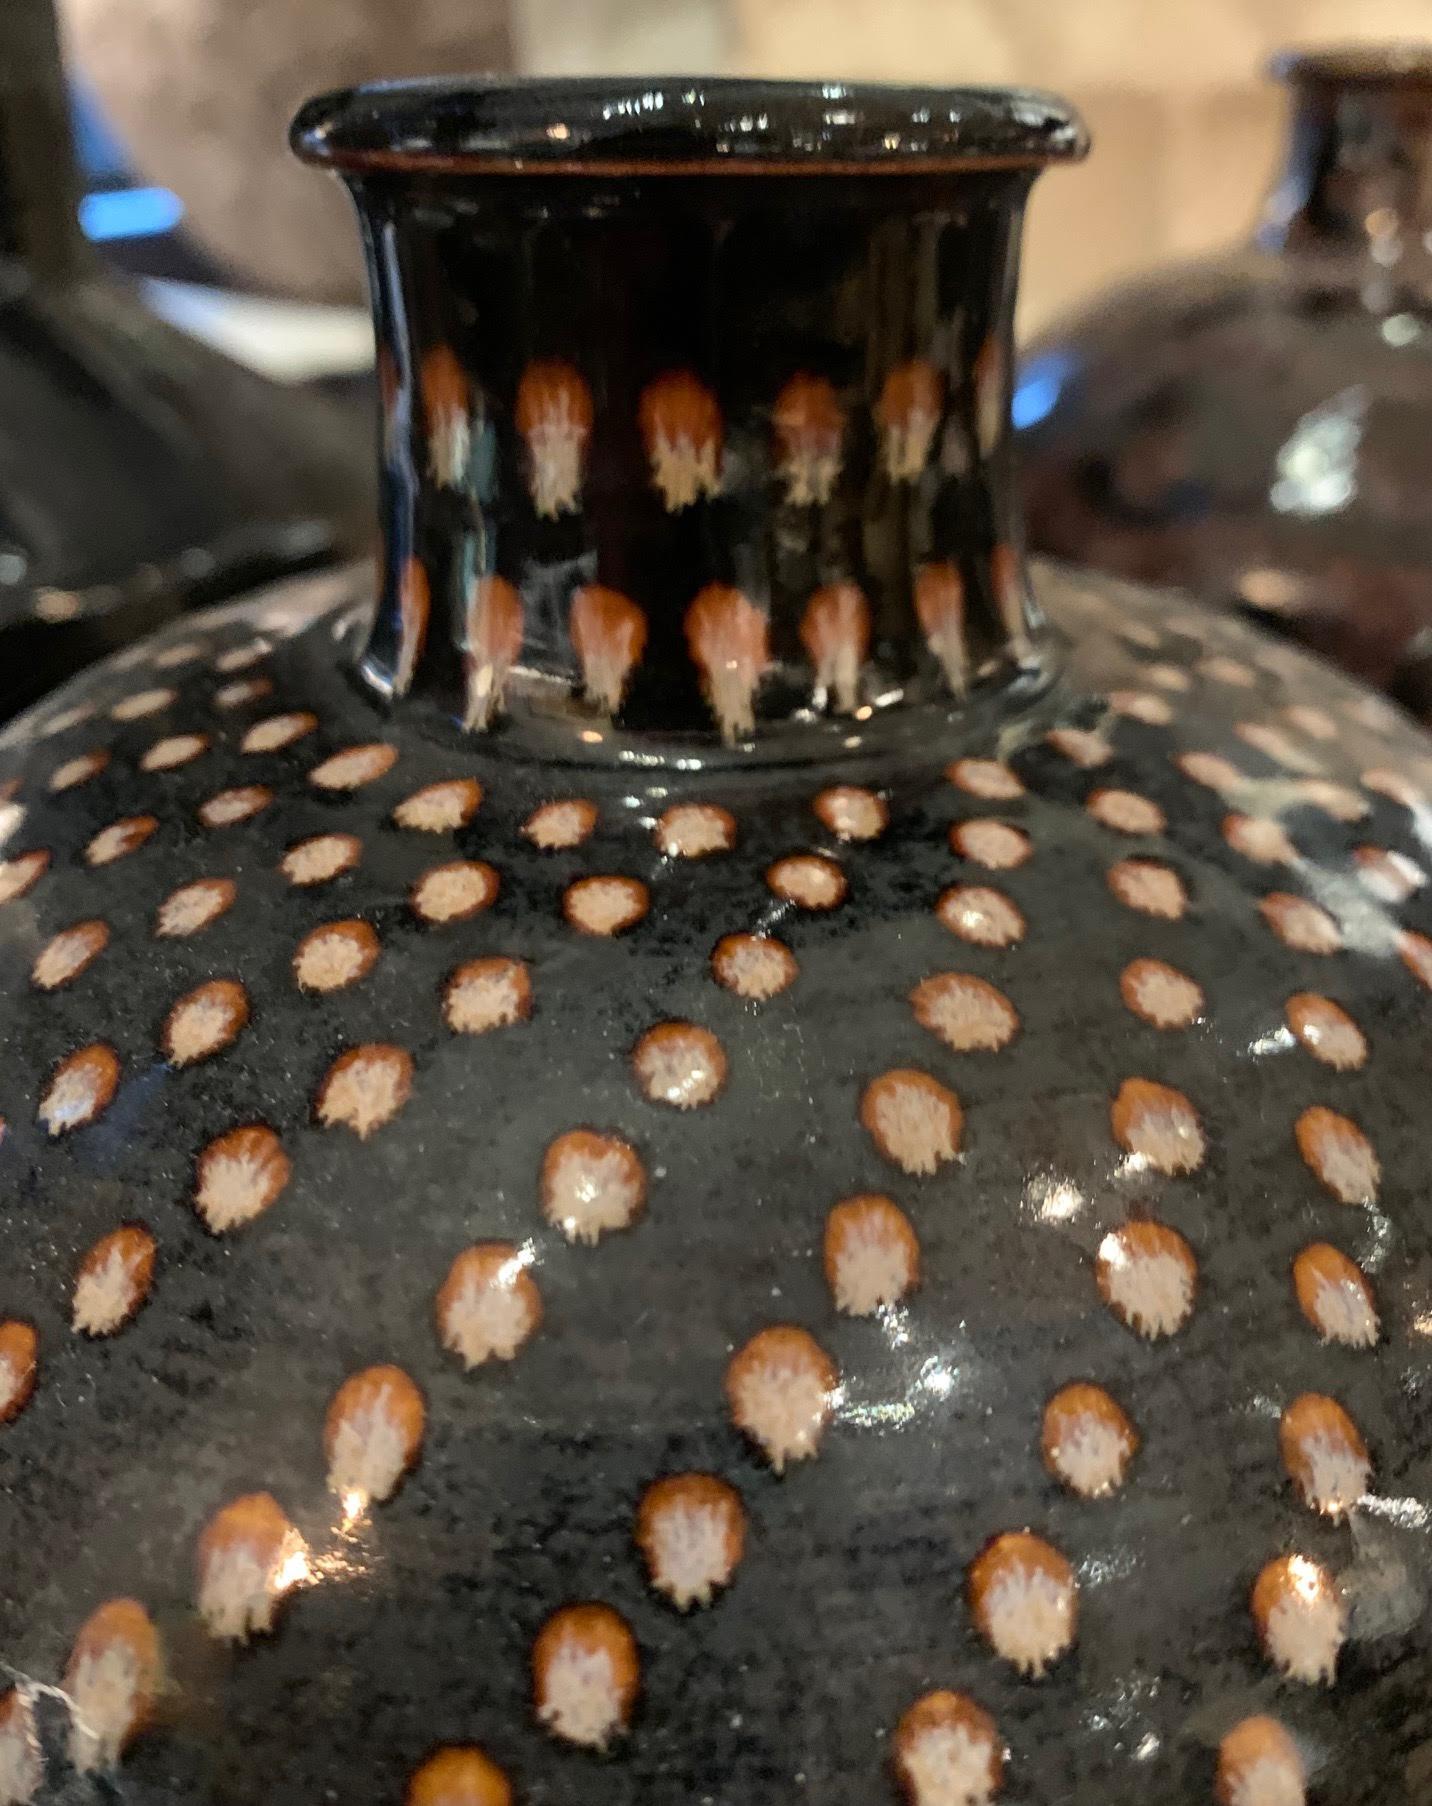 Vase chinois contemporain en grès à fond noir avec des points décoratifs peints à la main de couleur crème.
Fait partie d'une grande collection.